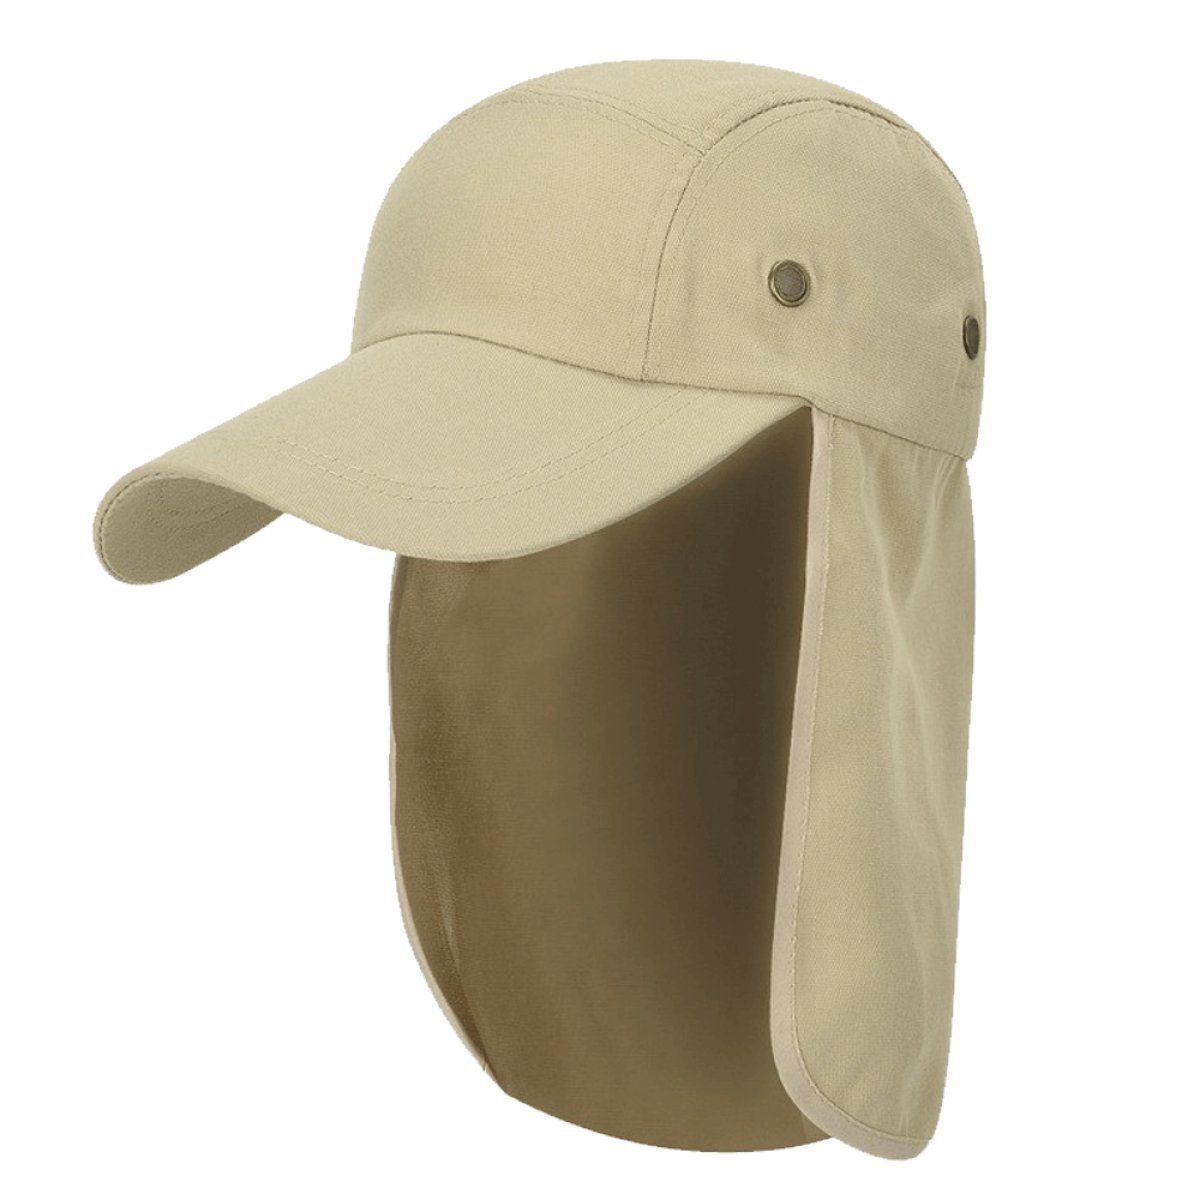 Rwoythk Outdoorhut Hut mit Nackenschutz Mehrzweck Sommer Sonnenhut Sonnenschutz Atmung Beige | Hüte